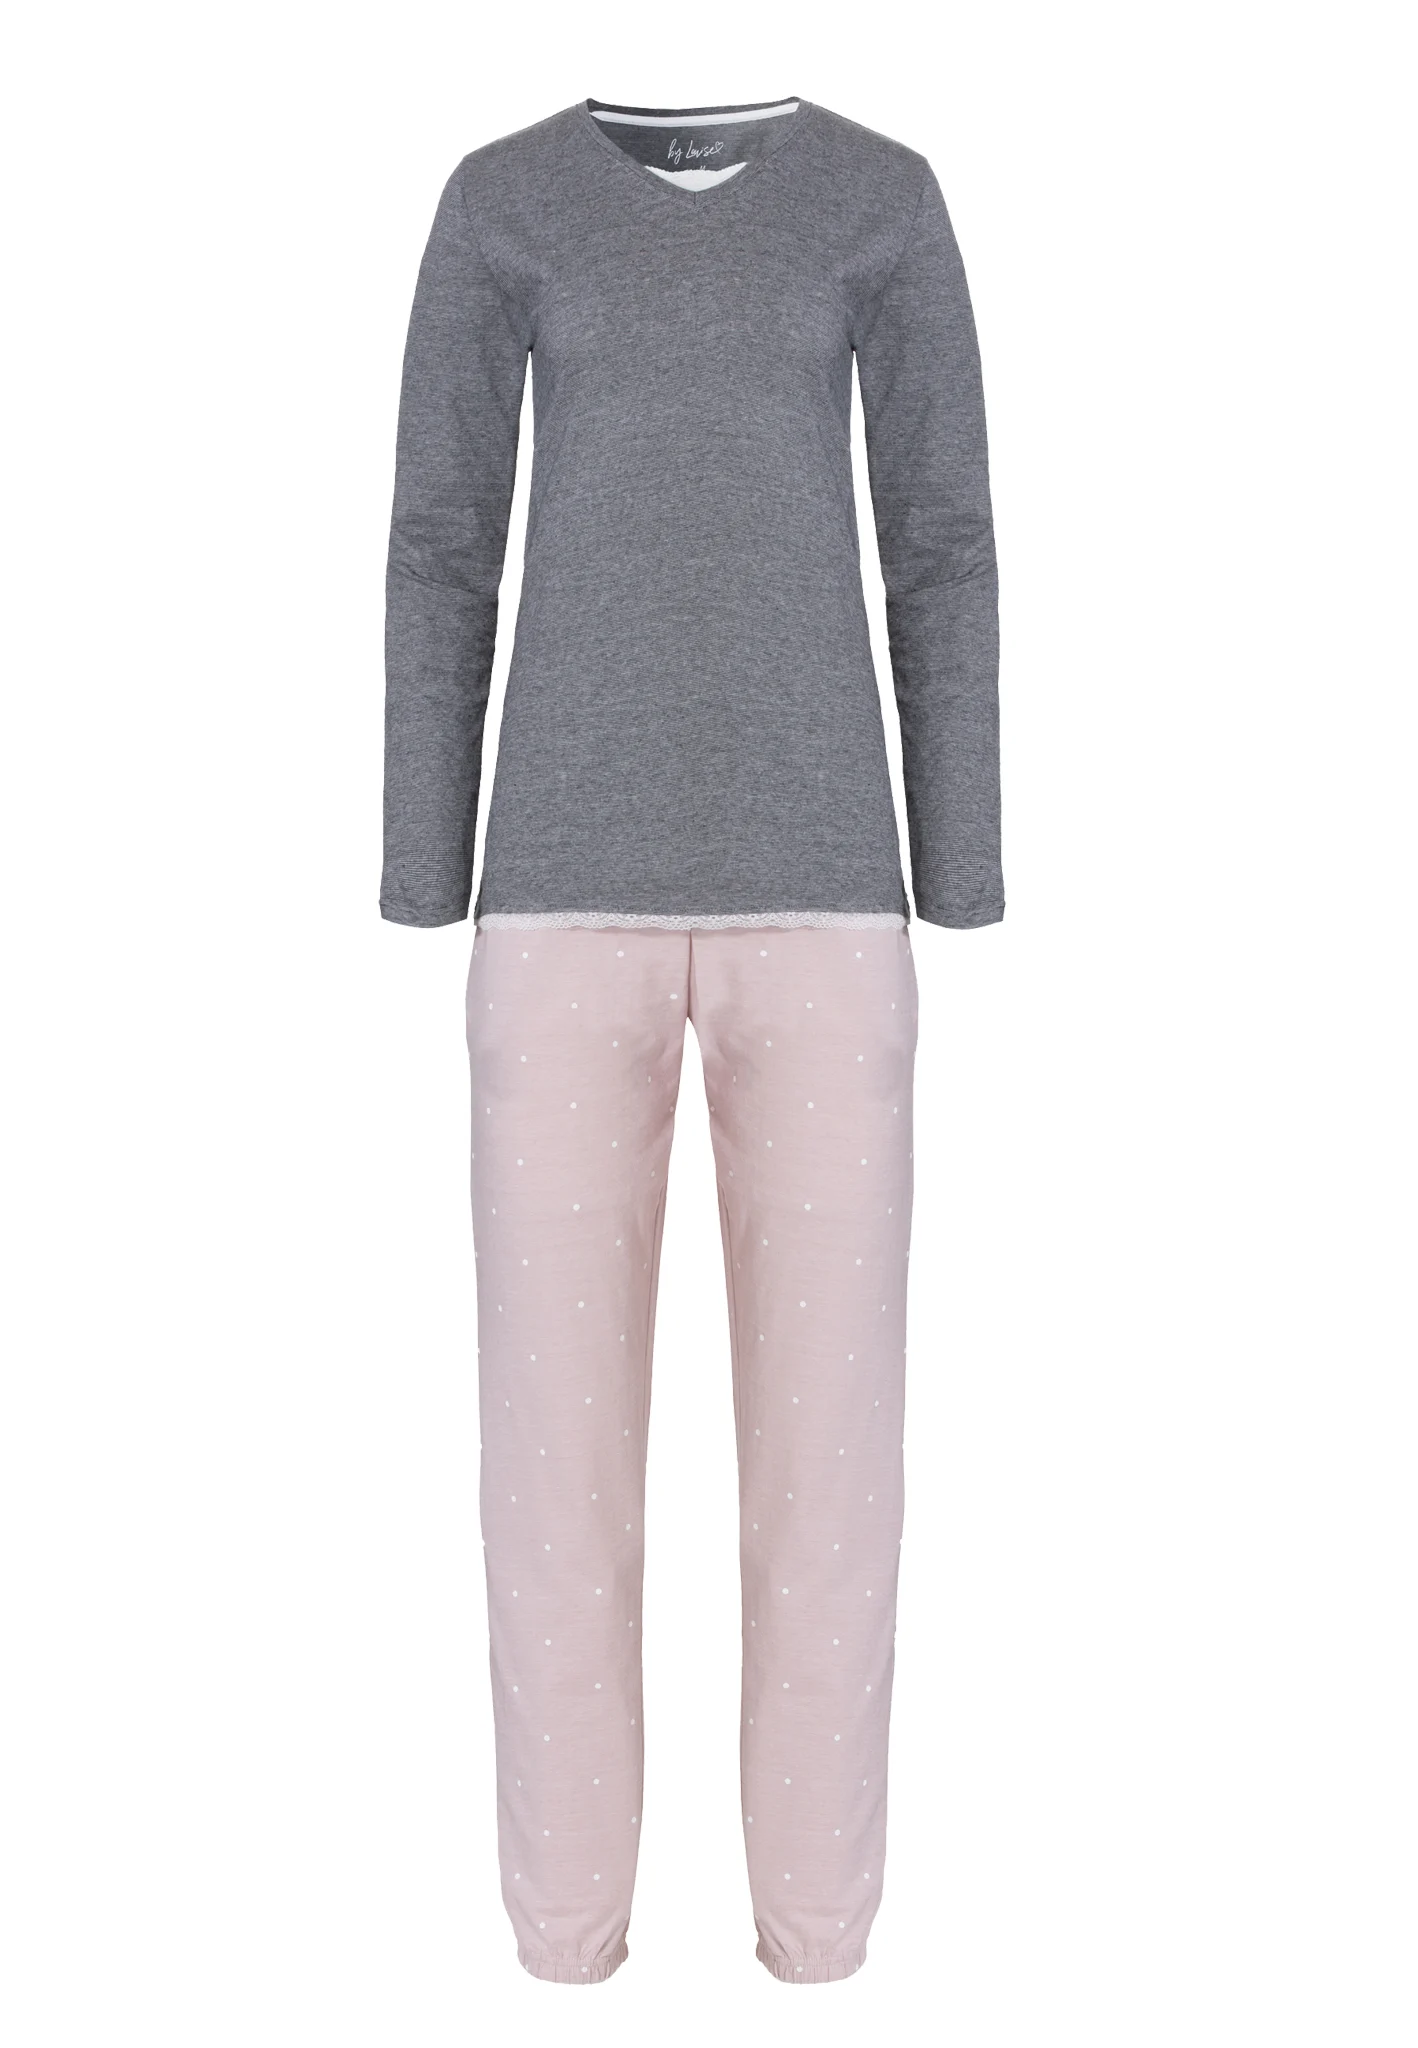 Afbeelding van By Louise Dames pyjama set lang katoen grijs / roze